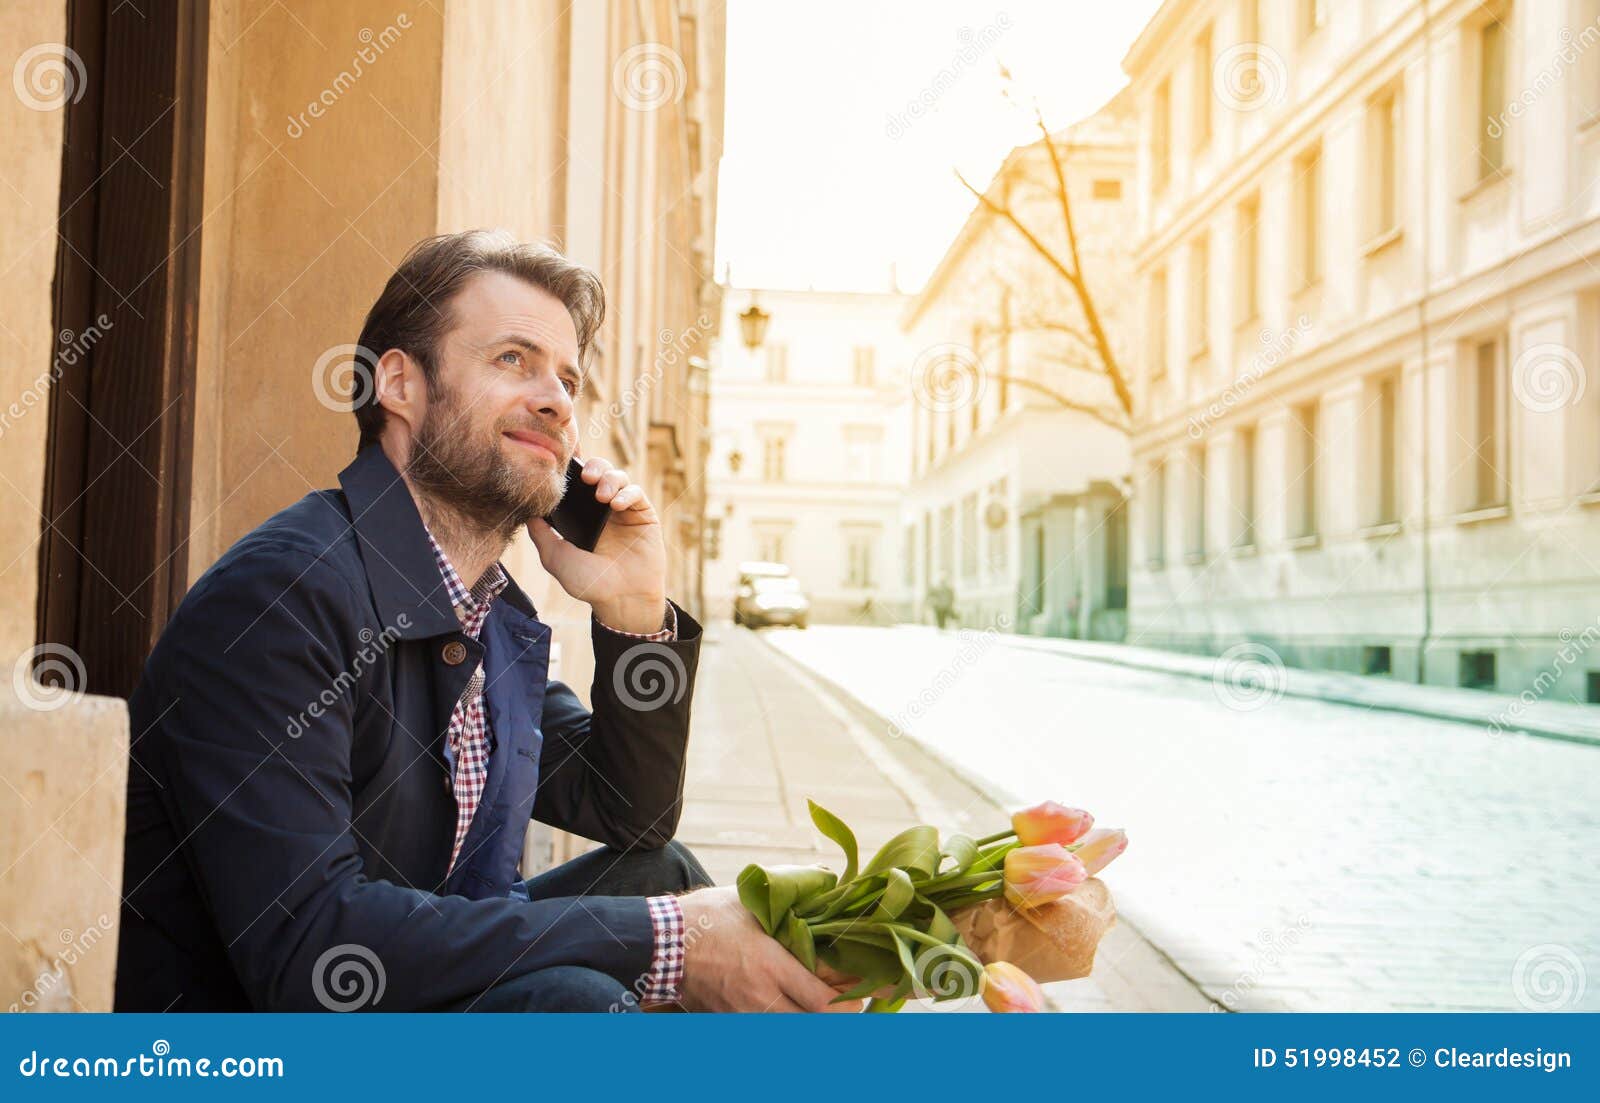 Glücklicher lächelnder Mann mit Blumenblumenstrauß sprechend an einem Handy - Stadt. Glückliches lächeln vierzig Jahre alte kaukasische Mann mit Blumenblumenstrauß sprechend an einem Handy Straßen- und Stadtgebäude als Hintergrund